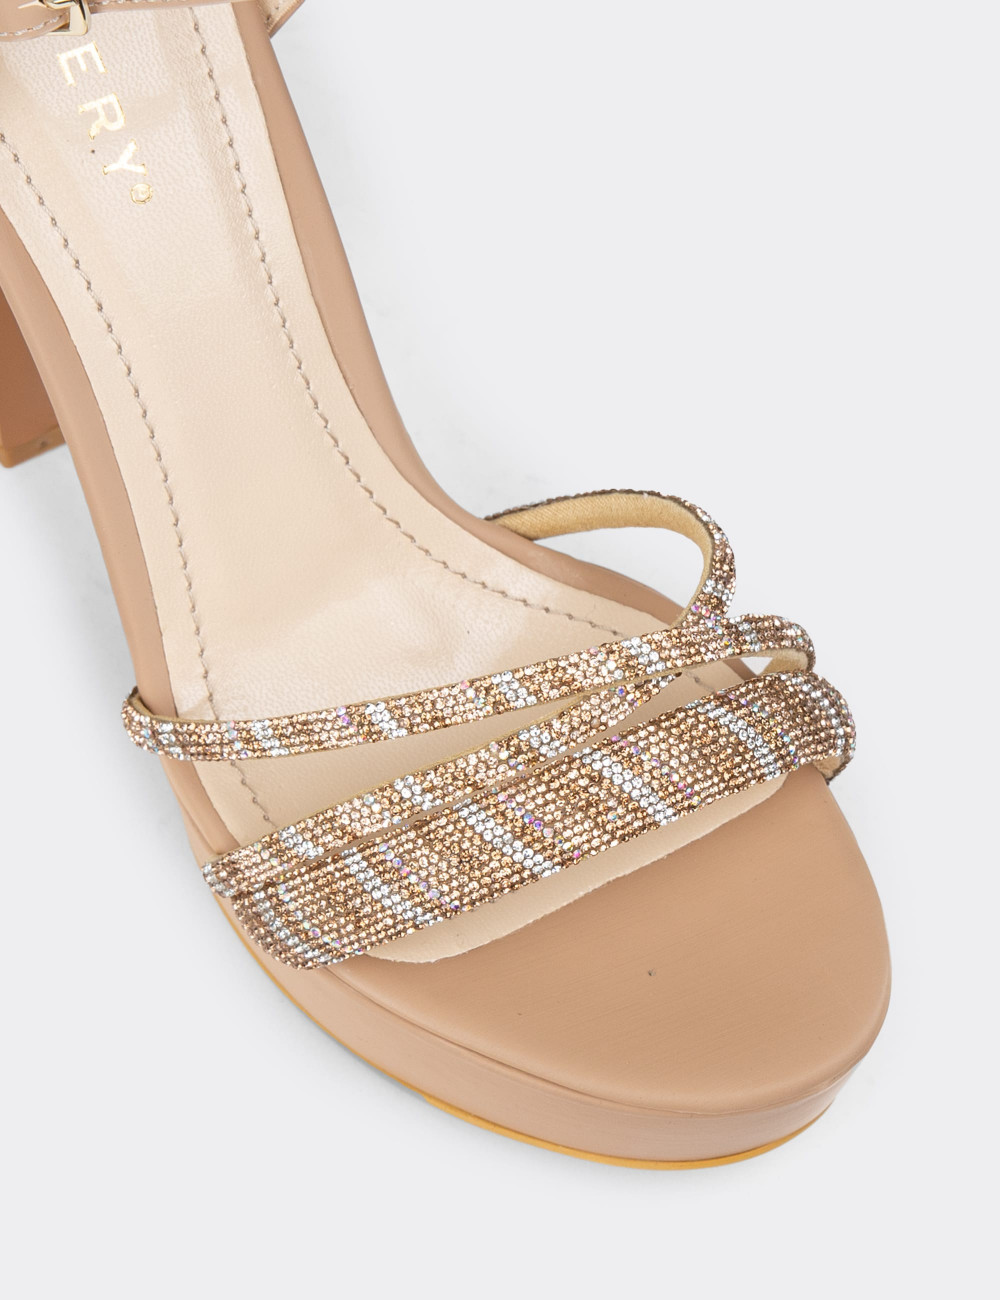 Bej Rengi Platform Topuk Kadın Abiye Ayakkabı - K2040ZBEJM01